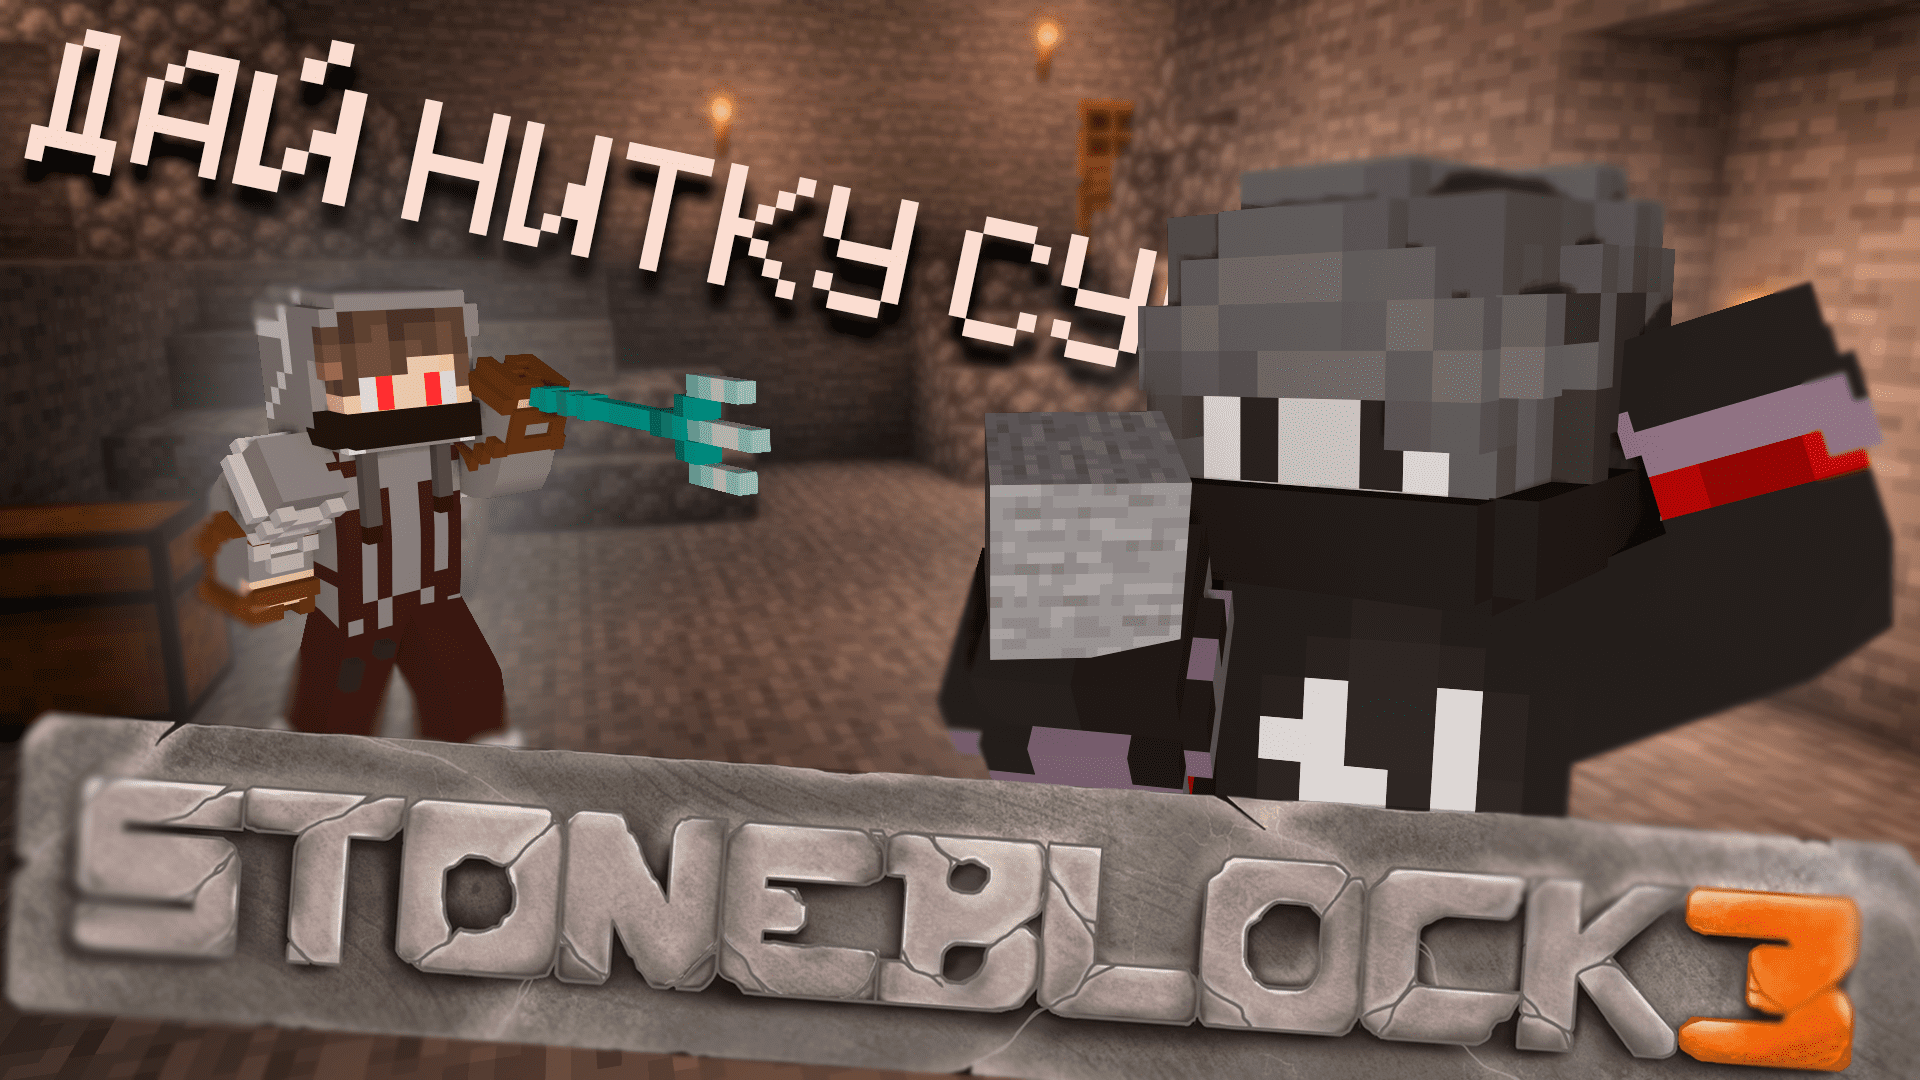 Сборка stoneblock 3